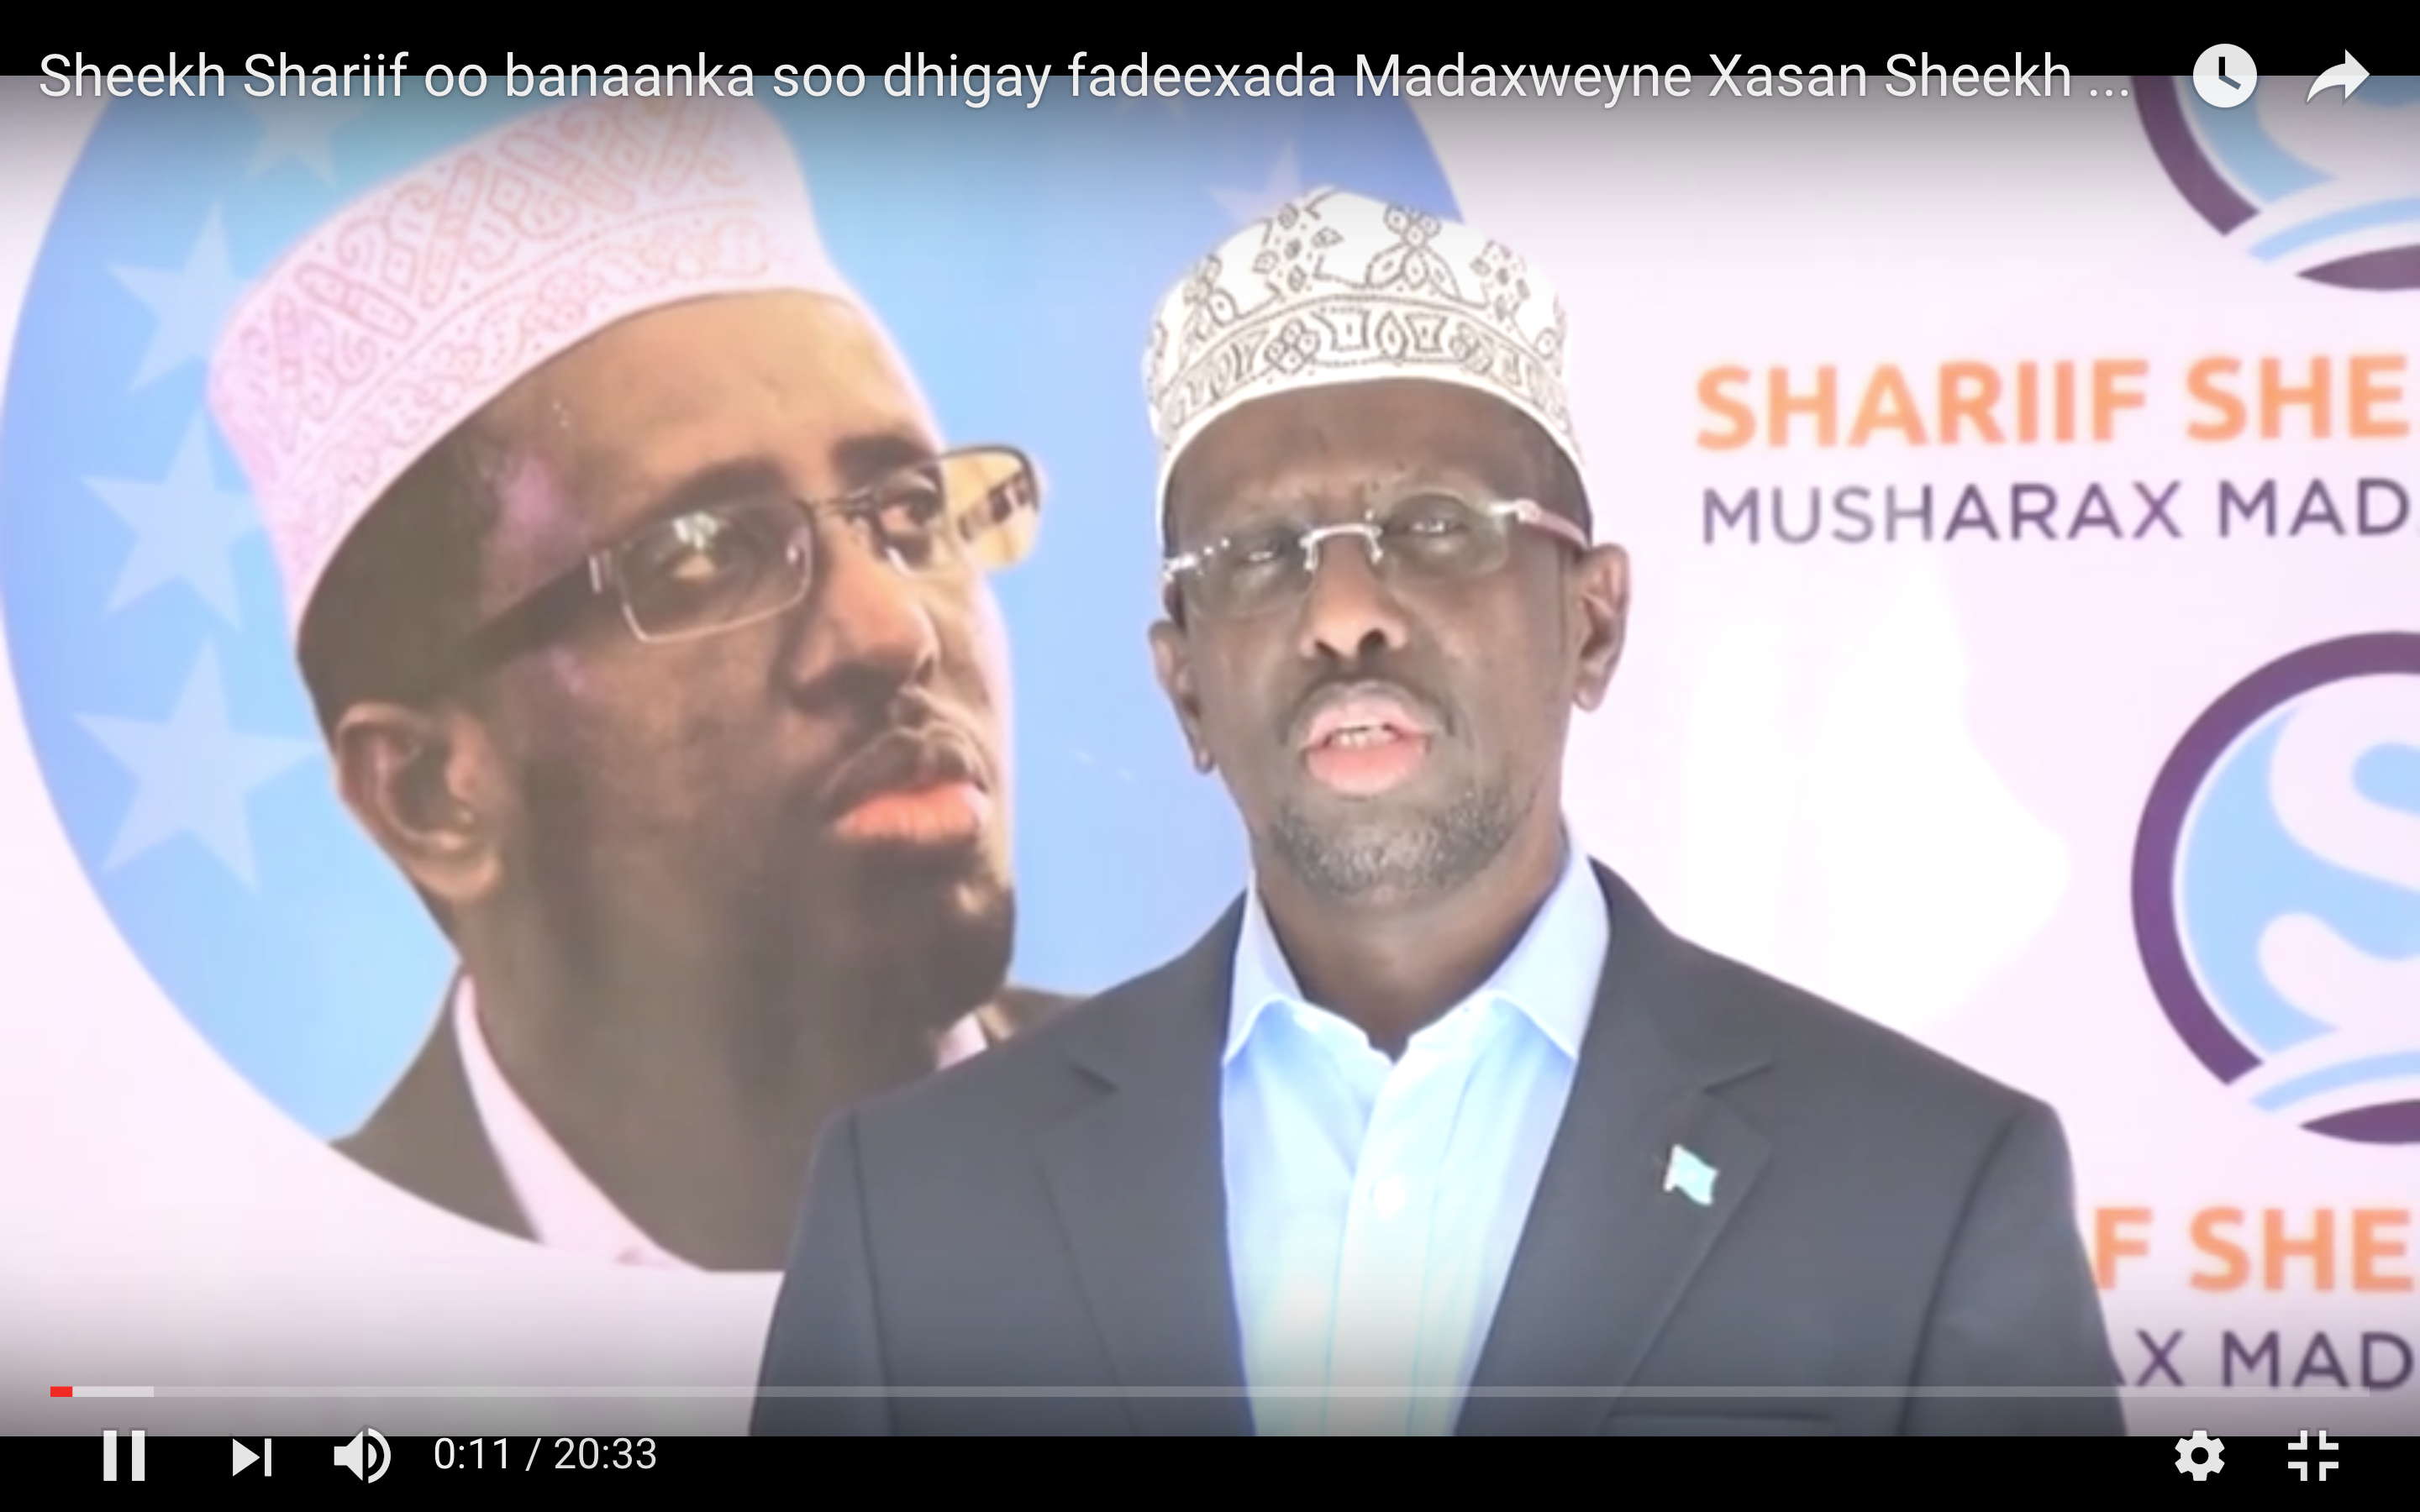 [Daawo] Shariifka oo sheegay in Garguurte lacag laaluusha siiyay Xildhibaanadda laakiin isaga yahay Madaxweynaha Somalia